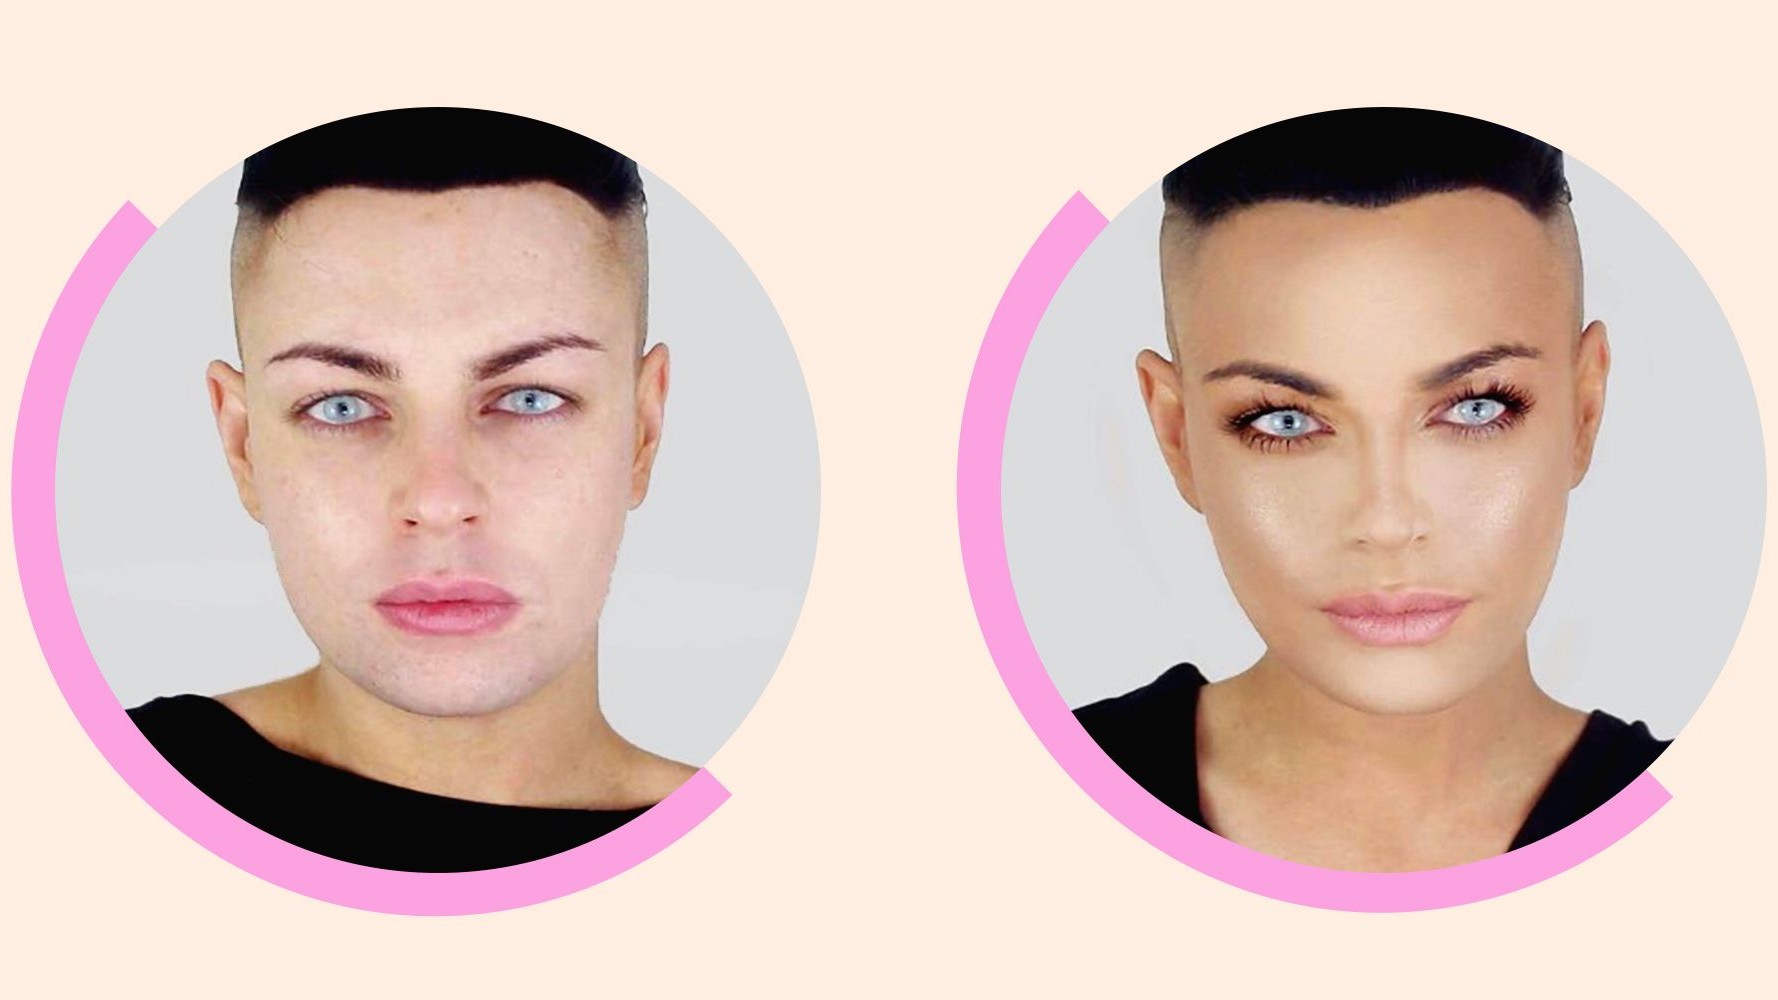 Face Lift with Makeup  Face contouring makeup, Makeup artist tips, Face  makeup tutorial